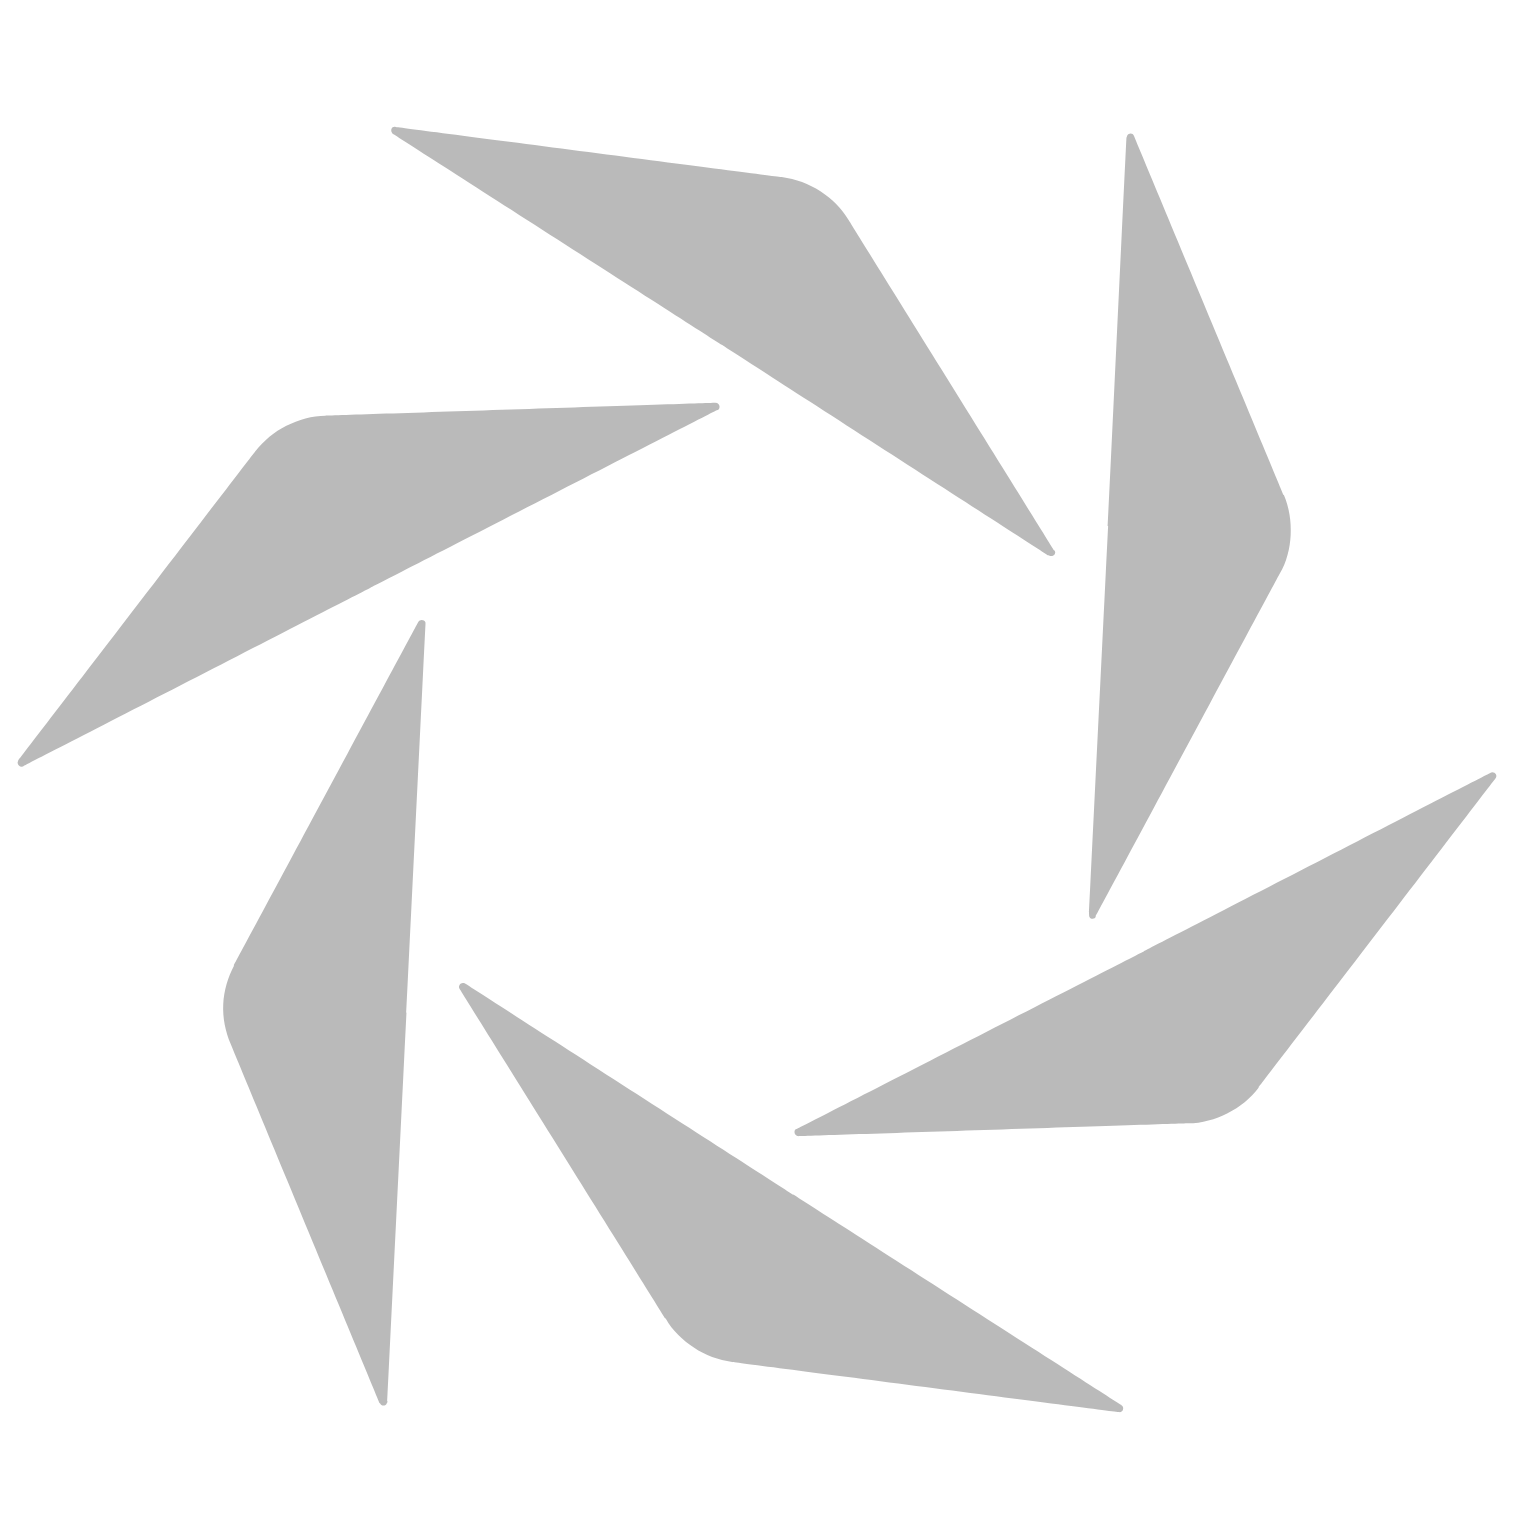 AAR logo for dark backgrounds (transparent PNG)